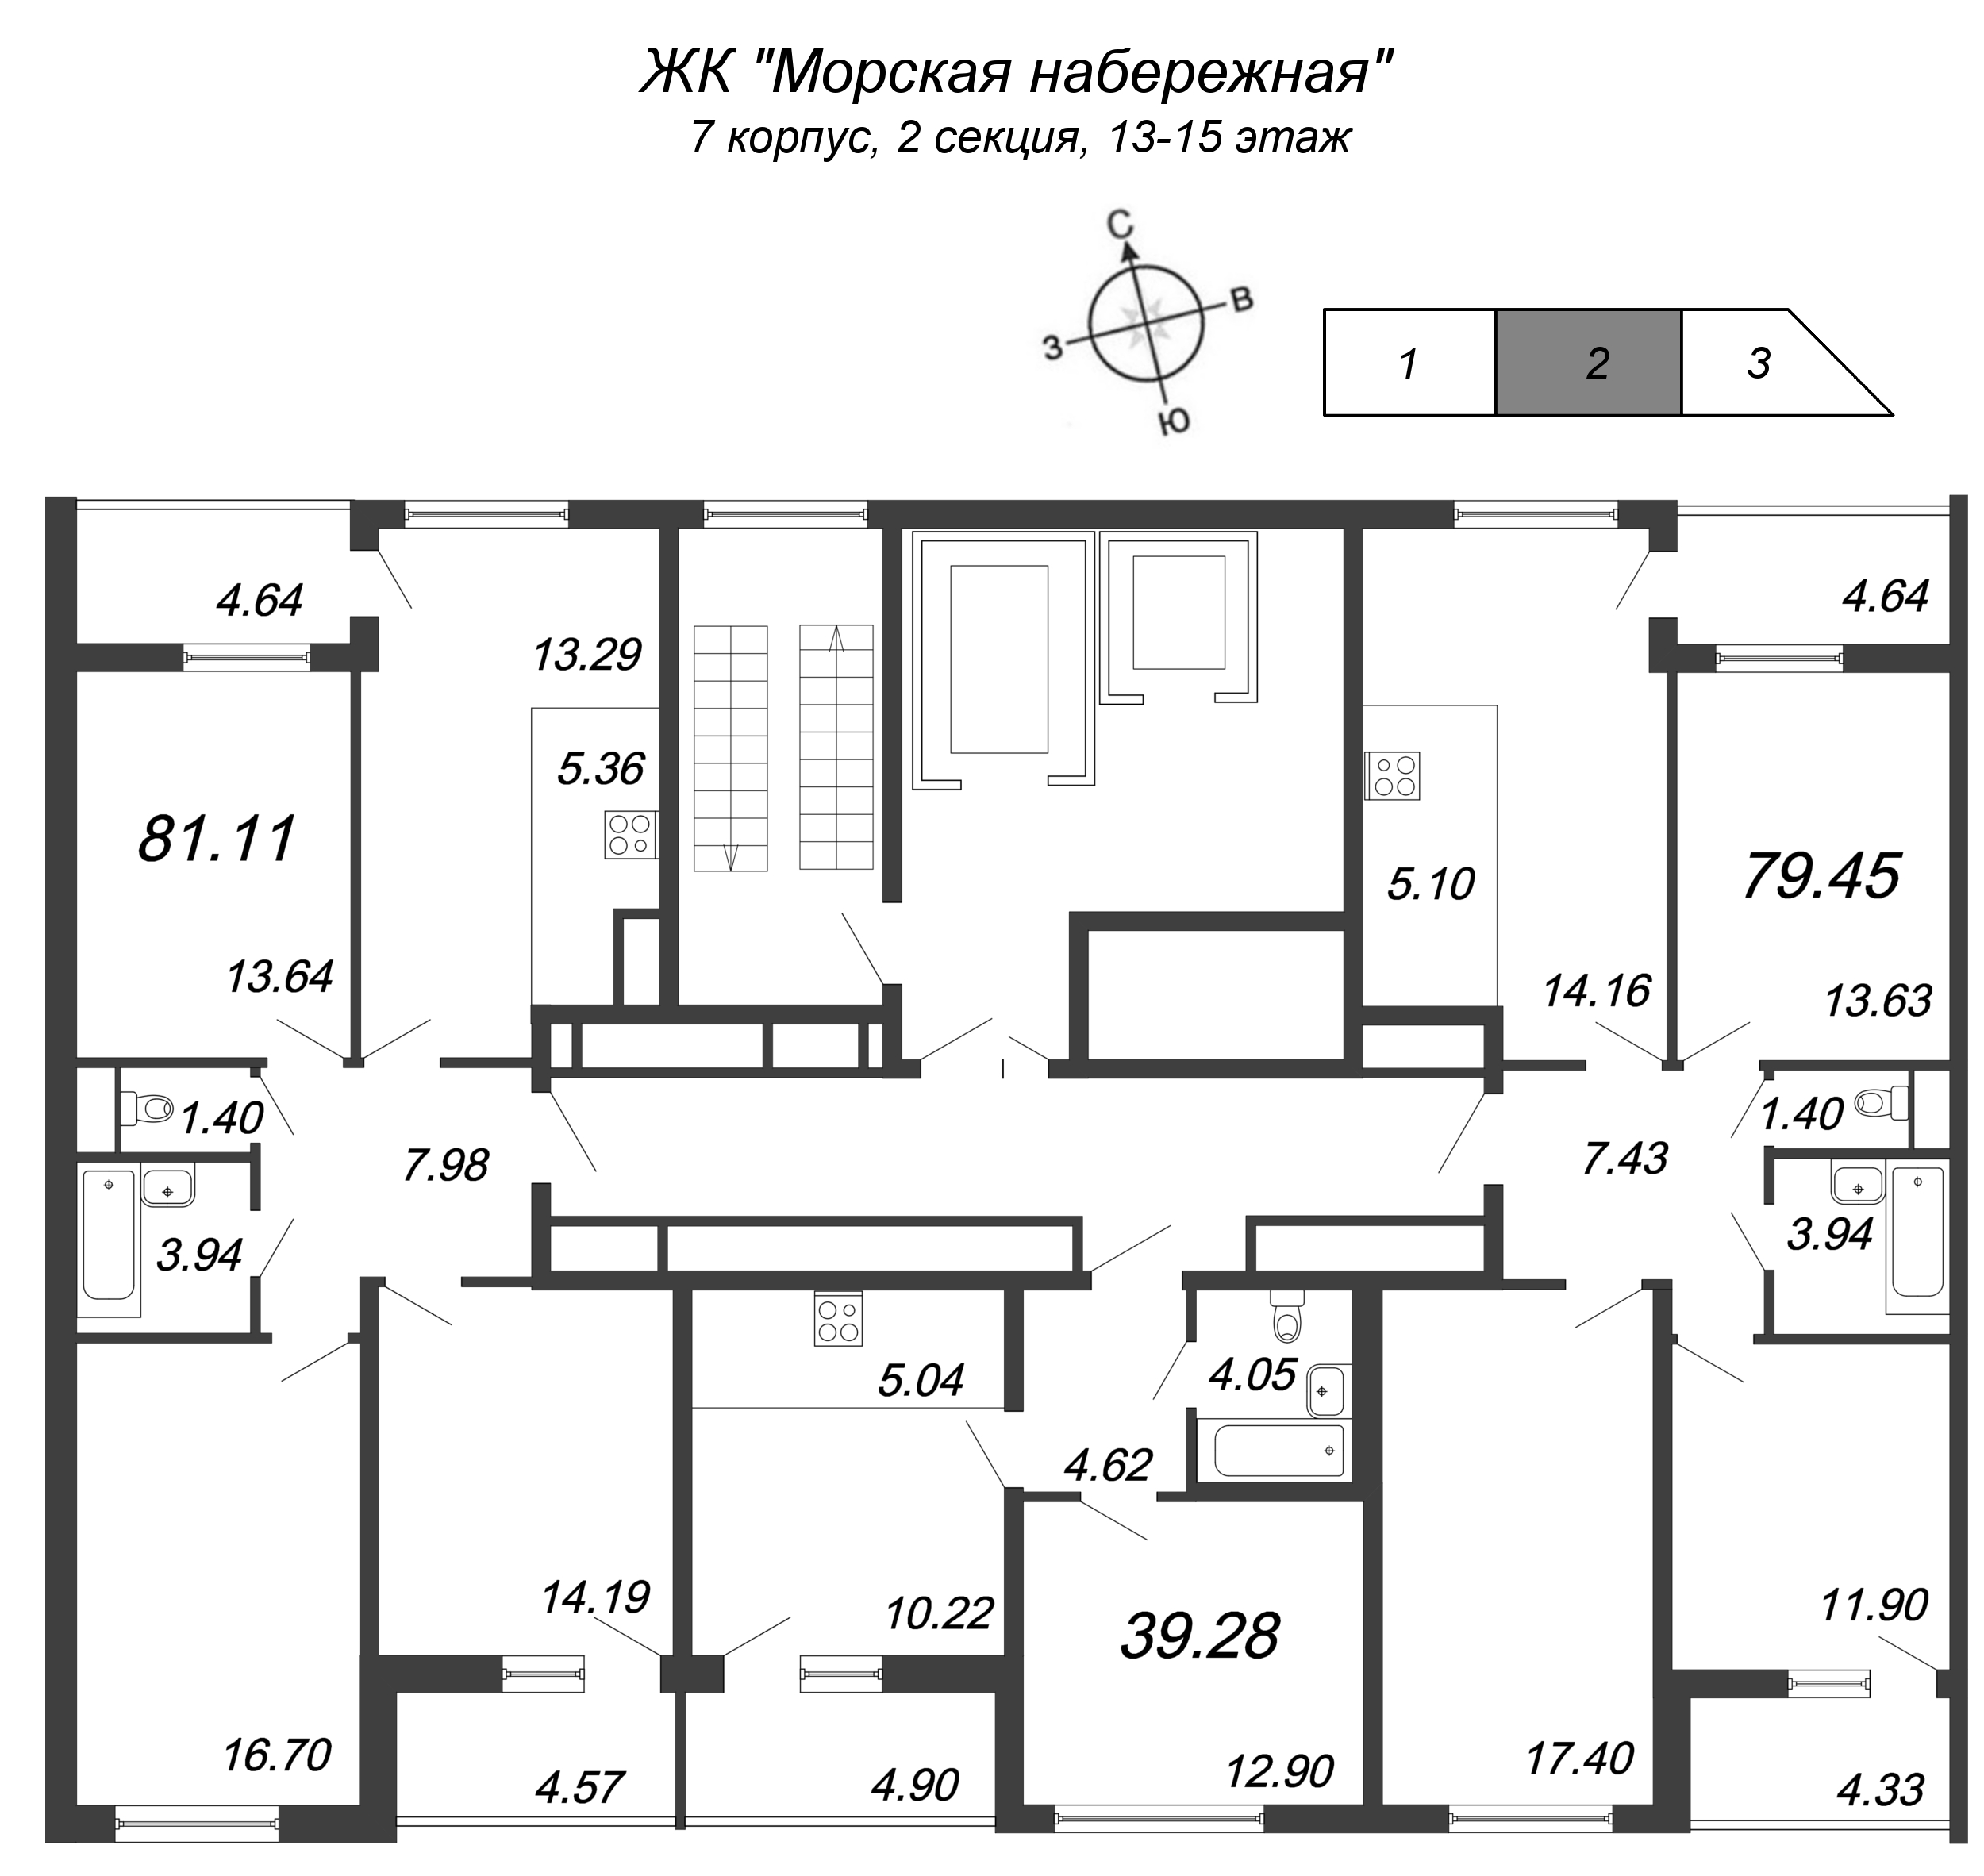 4-комнатная (Евро) квартира, 78.8 м² в ЖК "Морская набережная" - планировка этажа